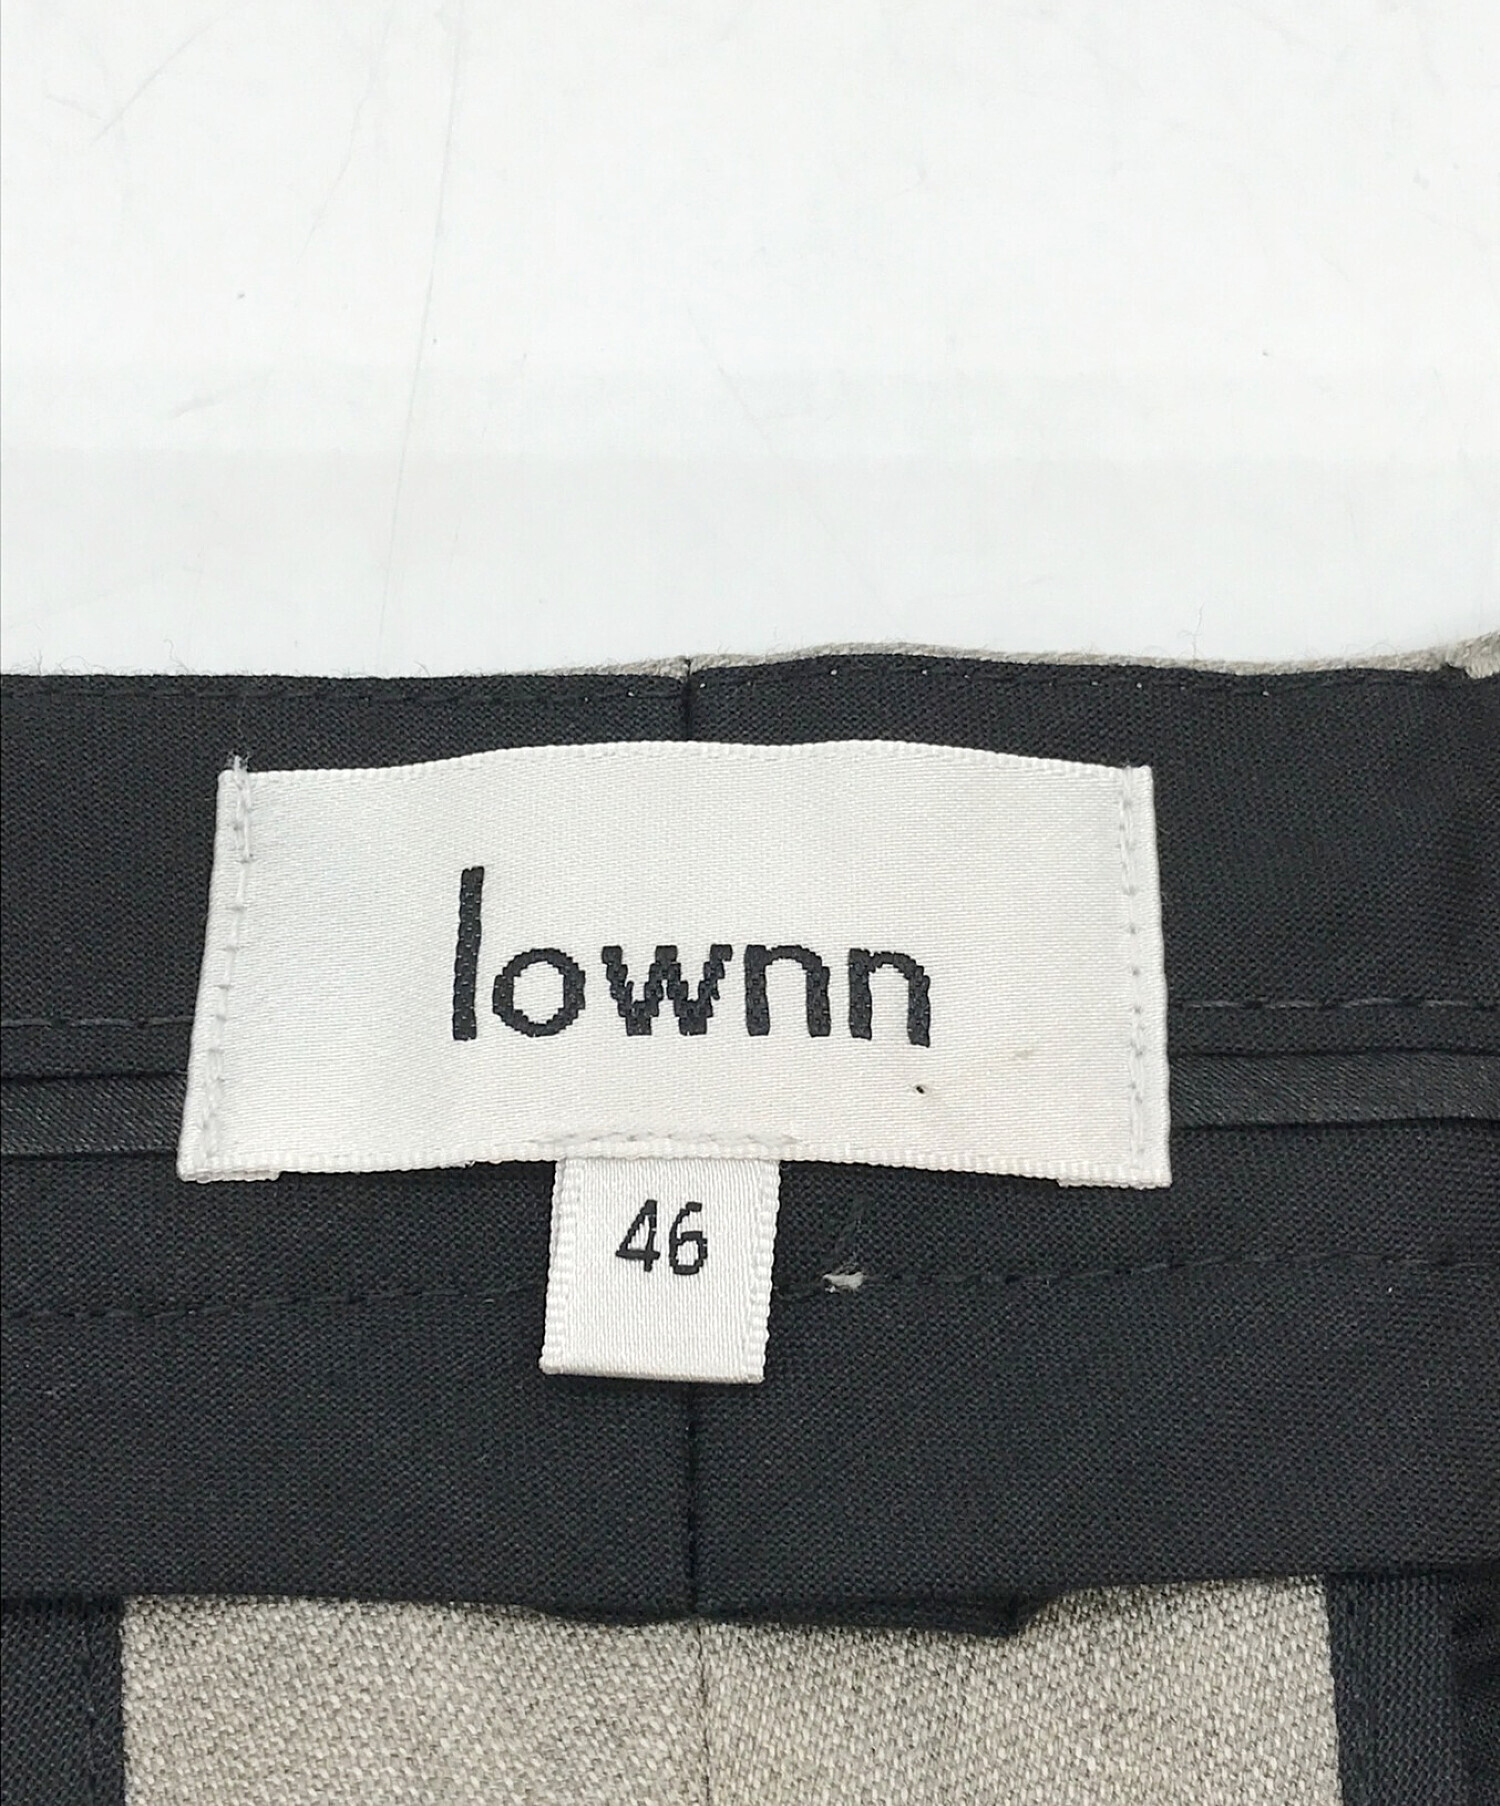 LOWNN テーパドスラックス サイズ46 - www.fourthquadrant.in